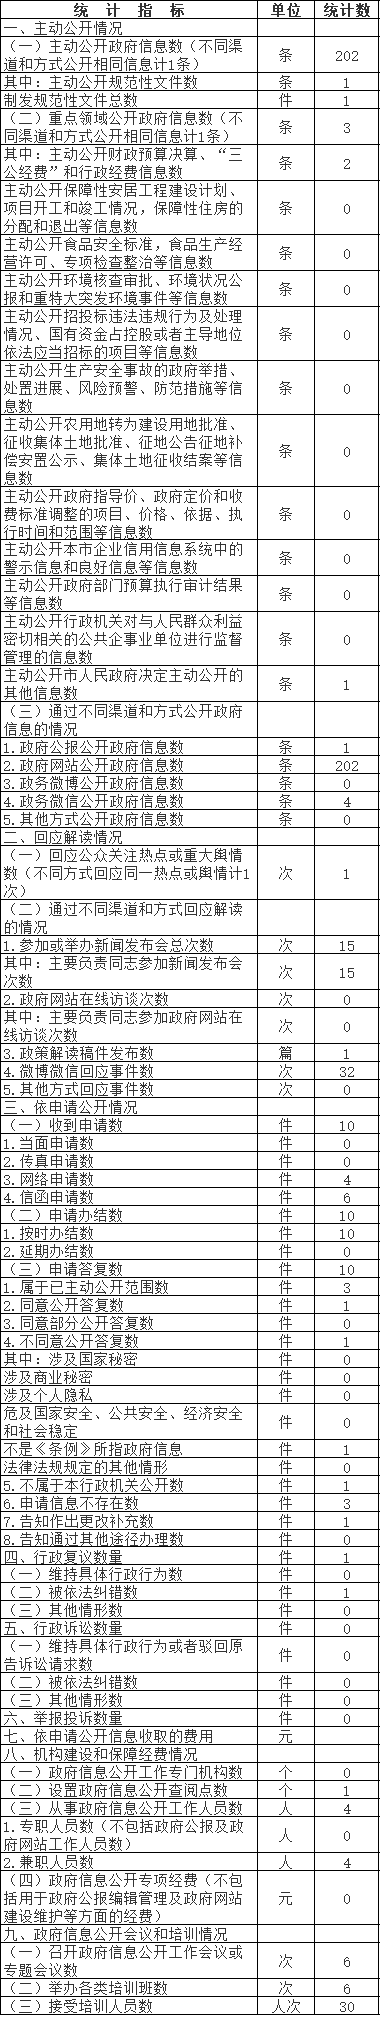 北京市中医管理局政府信息公开情况统计表(2017年度)